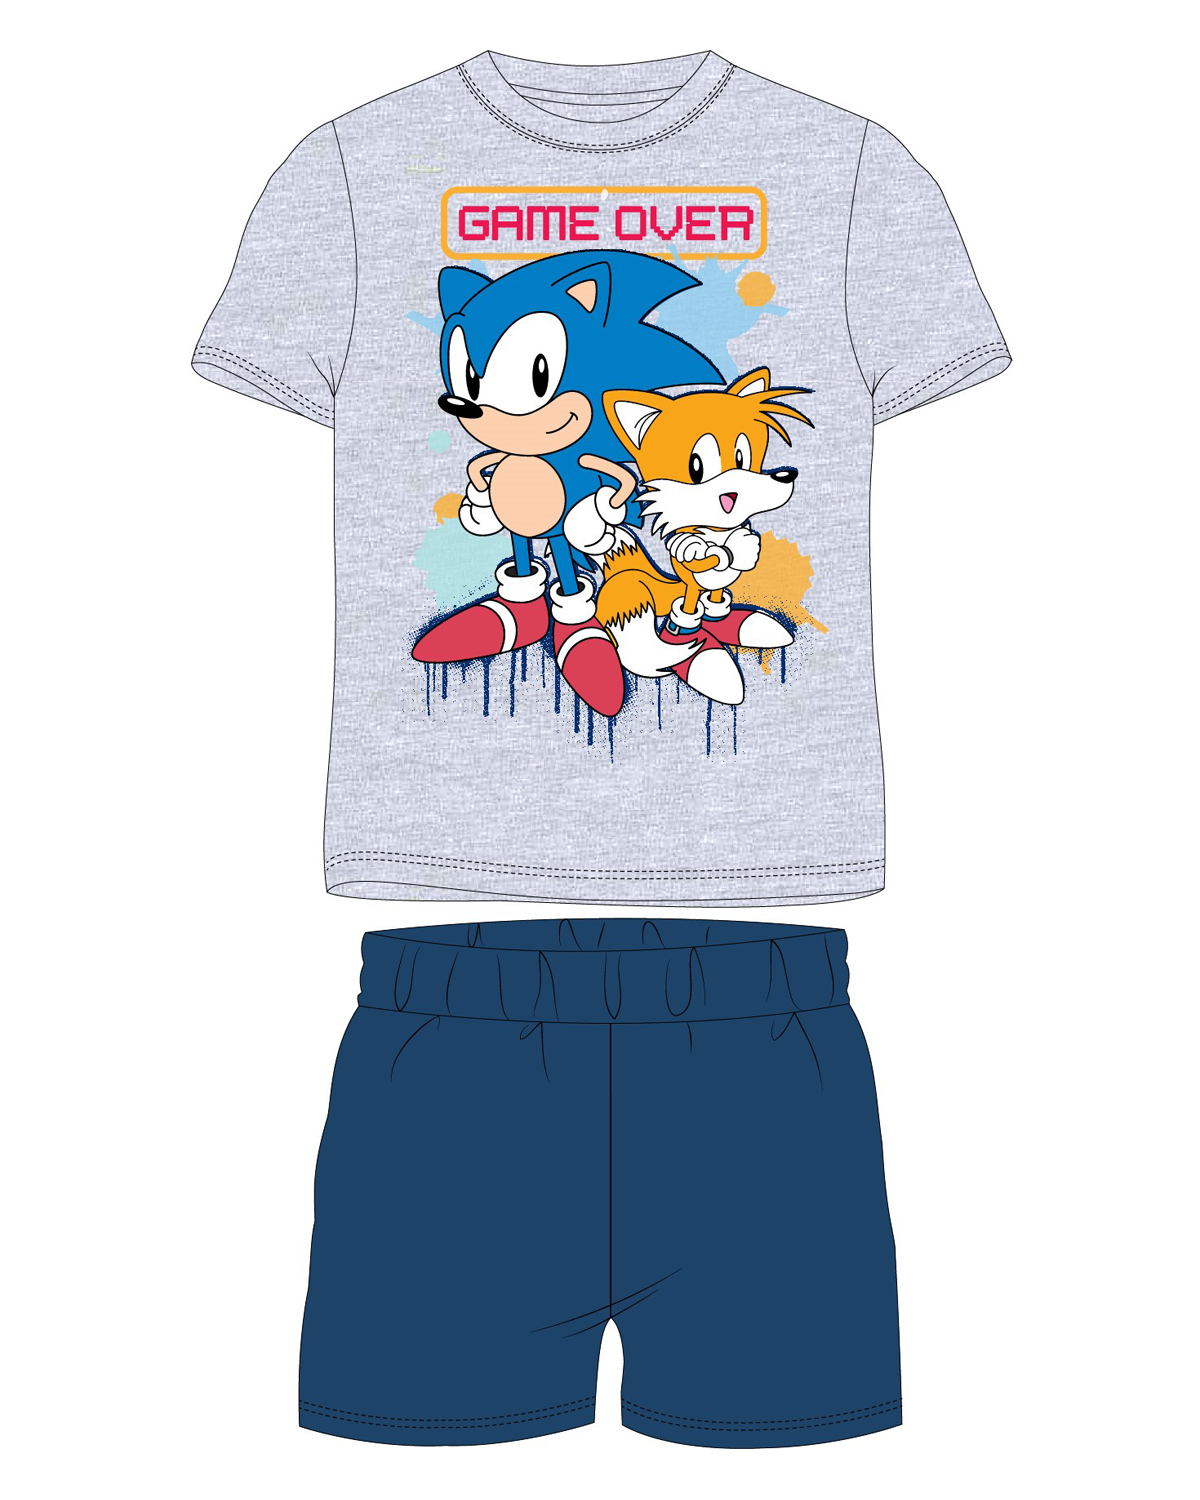 Ježek SONIC - licence Chlapecké pyžamo - Ježek Sonic 5204011, šedý melír / tmavě modrá Barva: Šedá, Velikost: 122